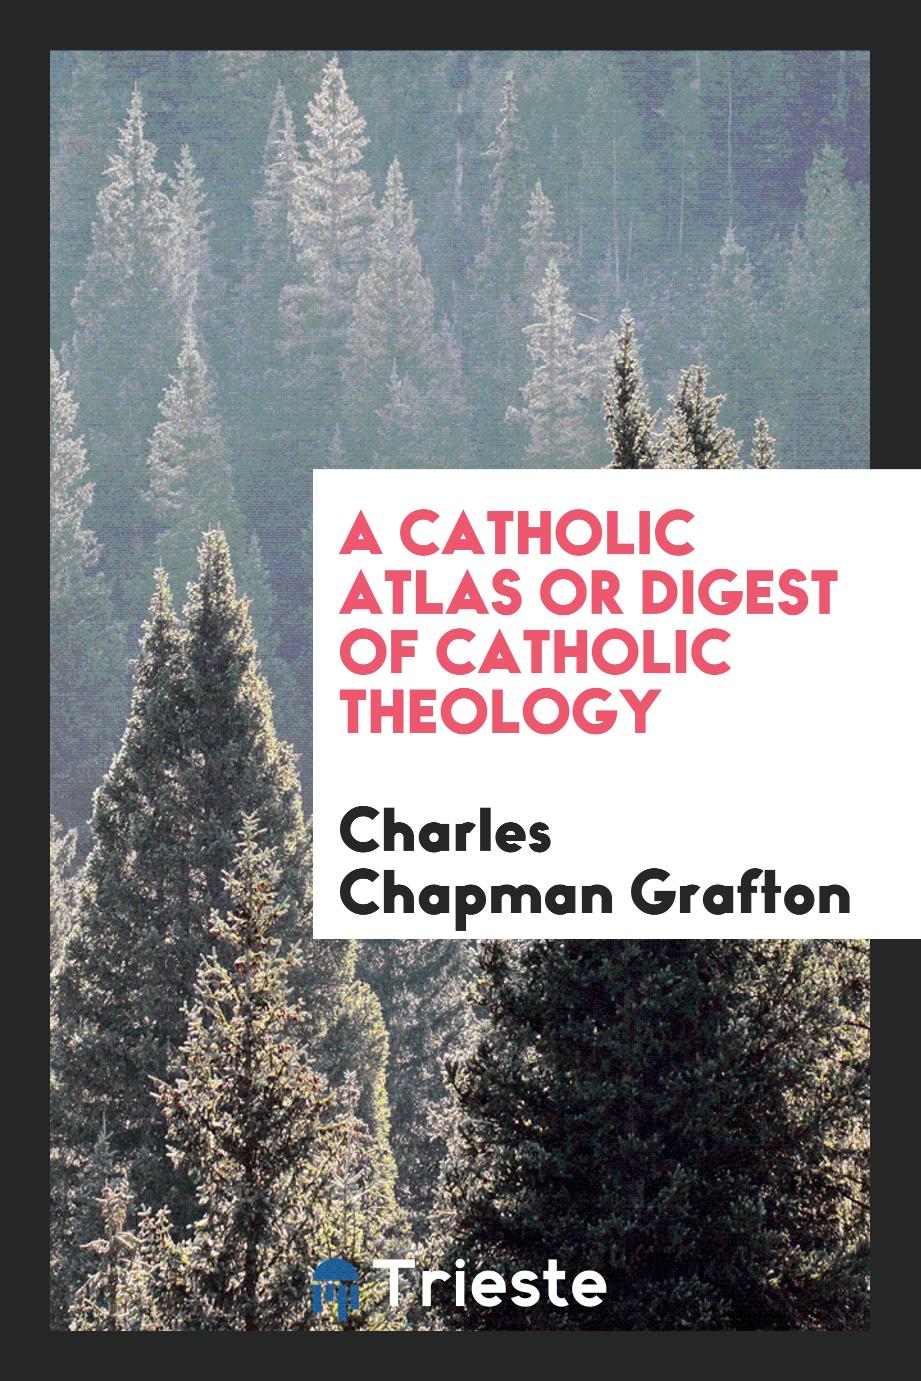 A Catholic atlas or digest of catholic theology